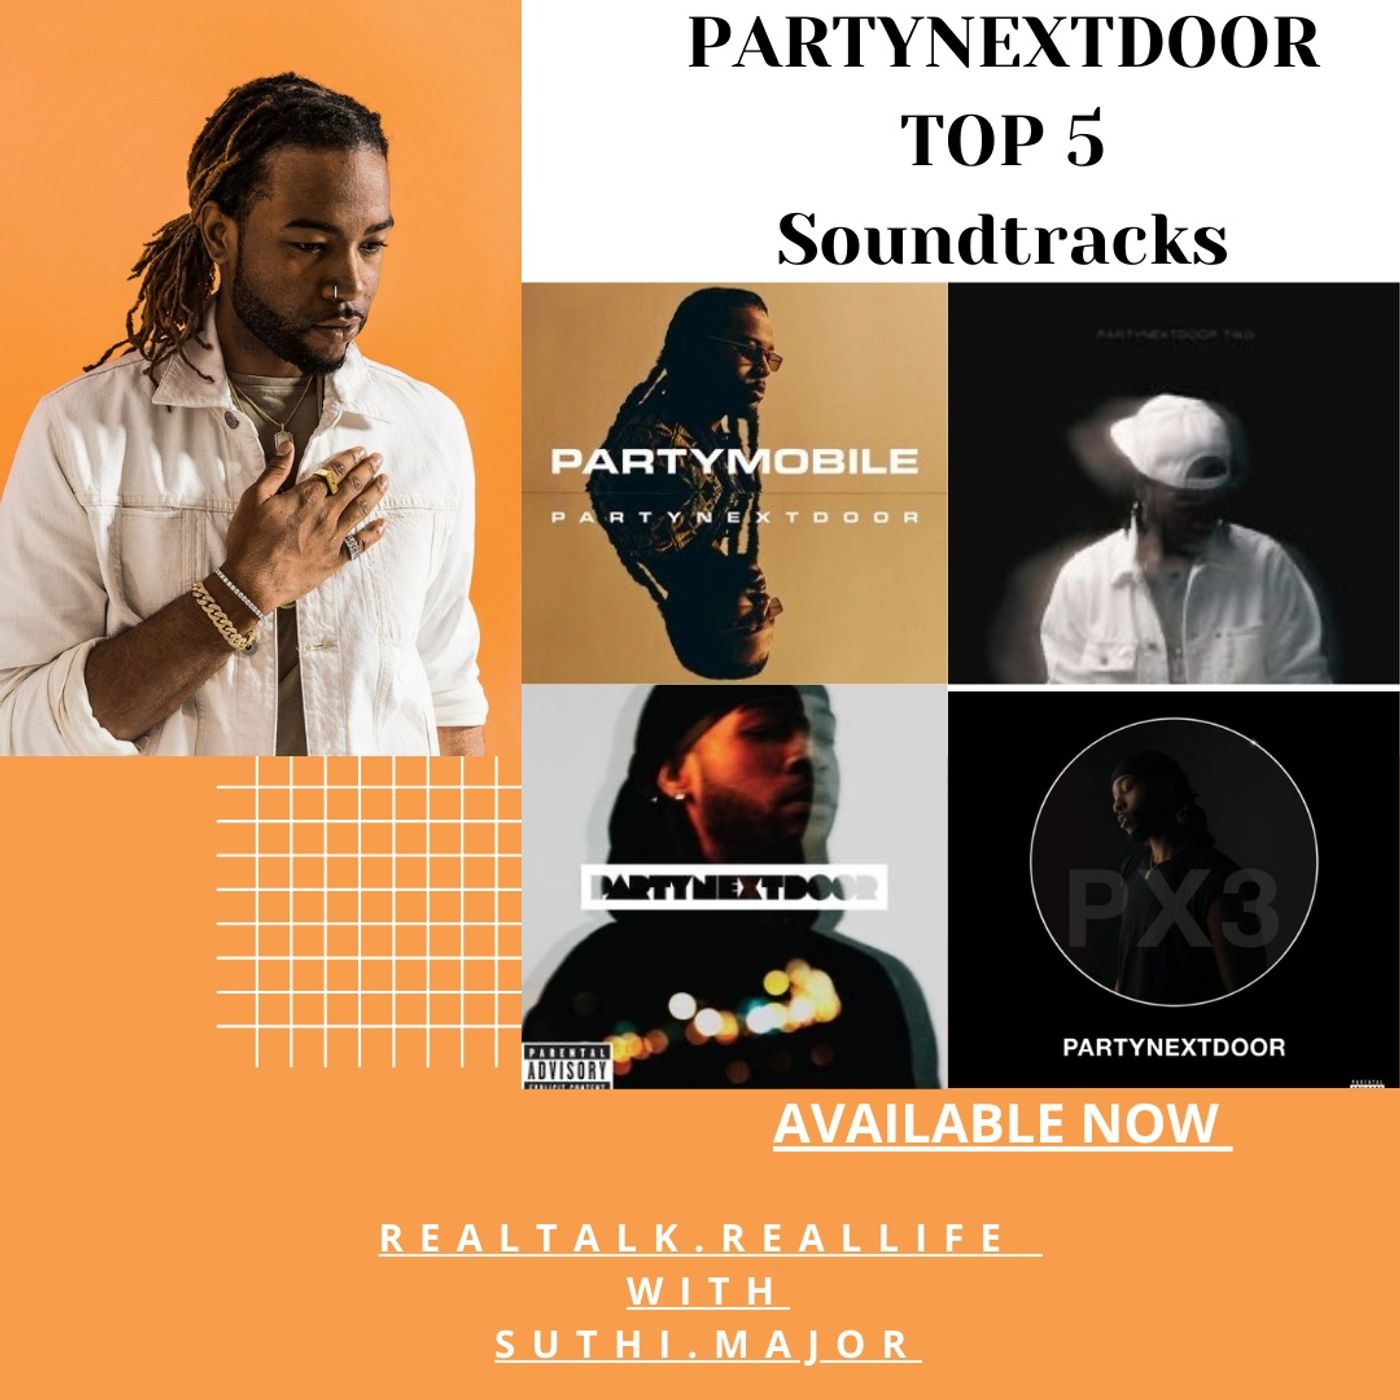 PartyNextDoor Top 5 Soundtracks